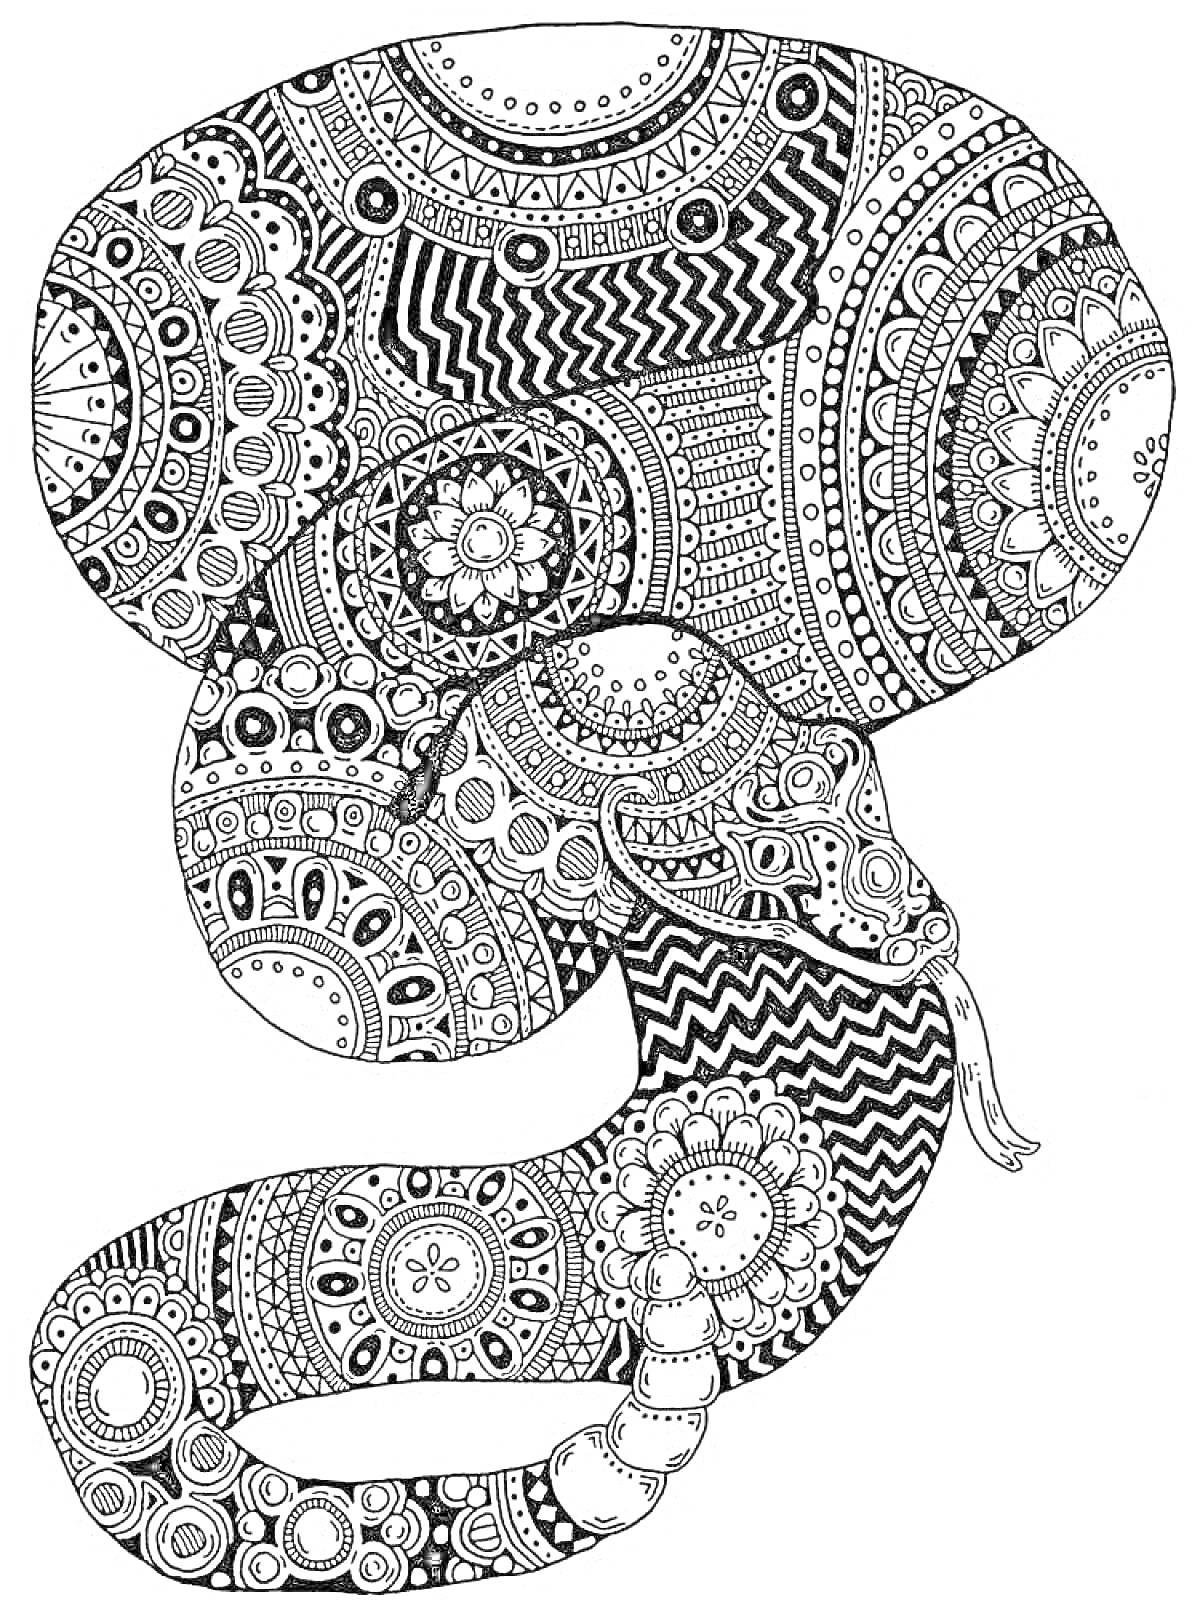 Раскраска Змея антистресс с узорами мандала, зигзагами, цветами и геометрическими фигурами